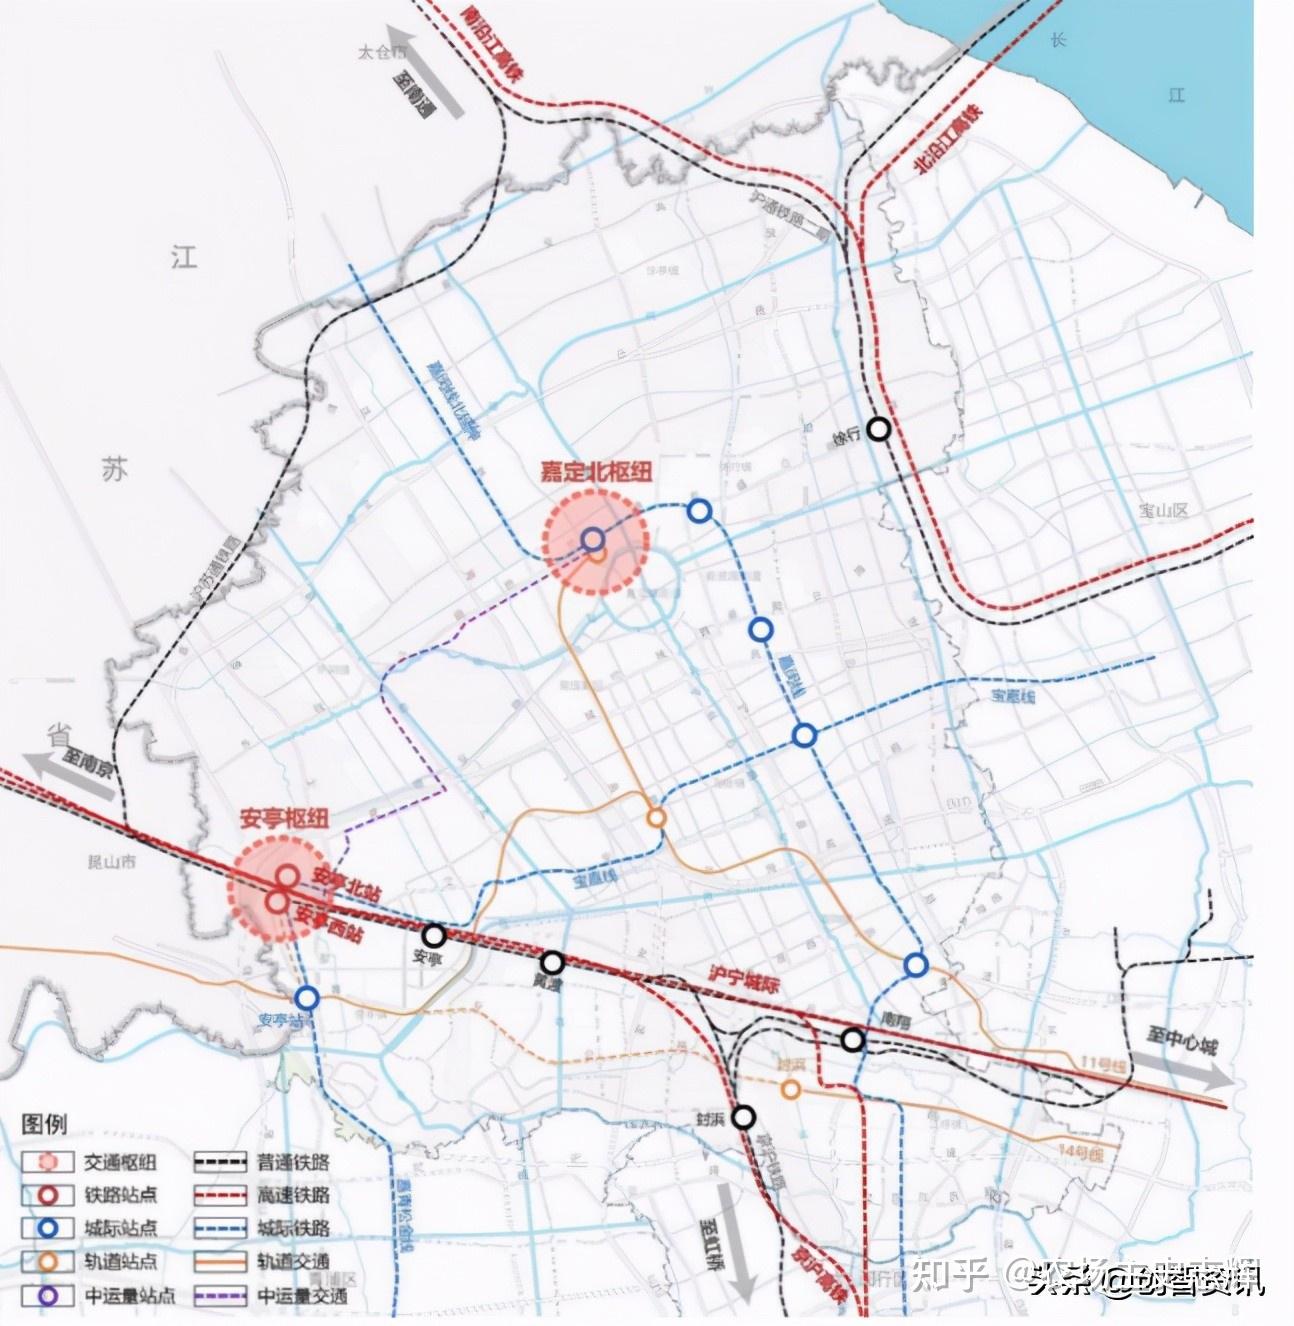 沪宁沿江高铁启动热滑试验 预计9月开通运营_新华报业网